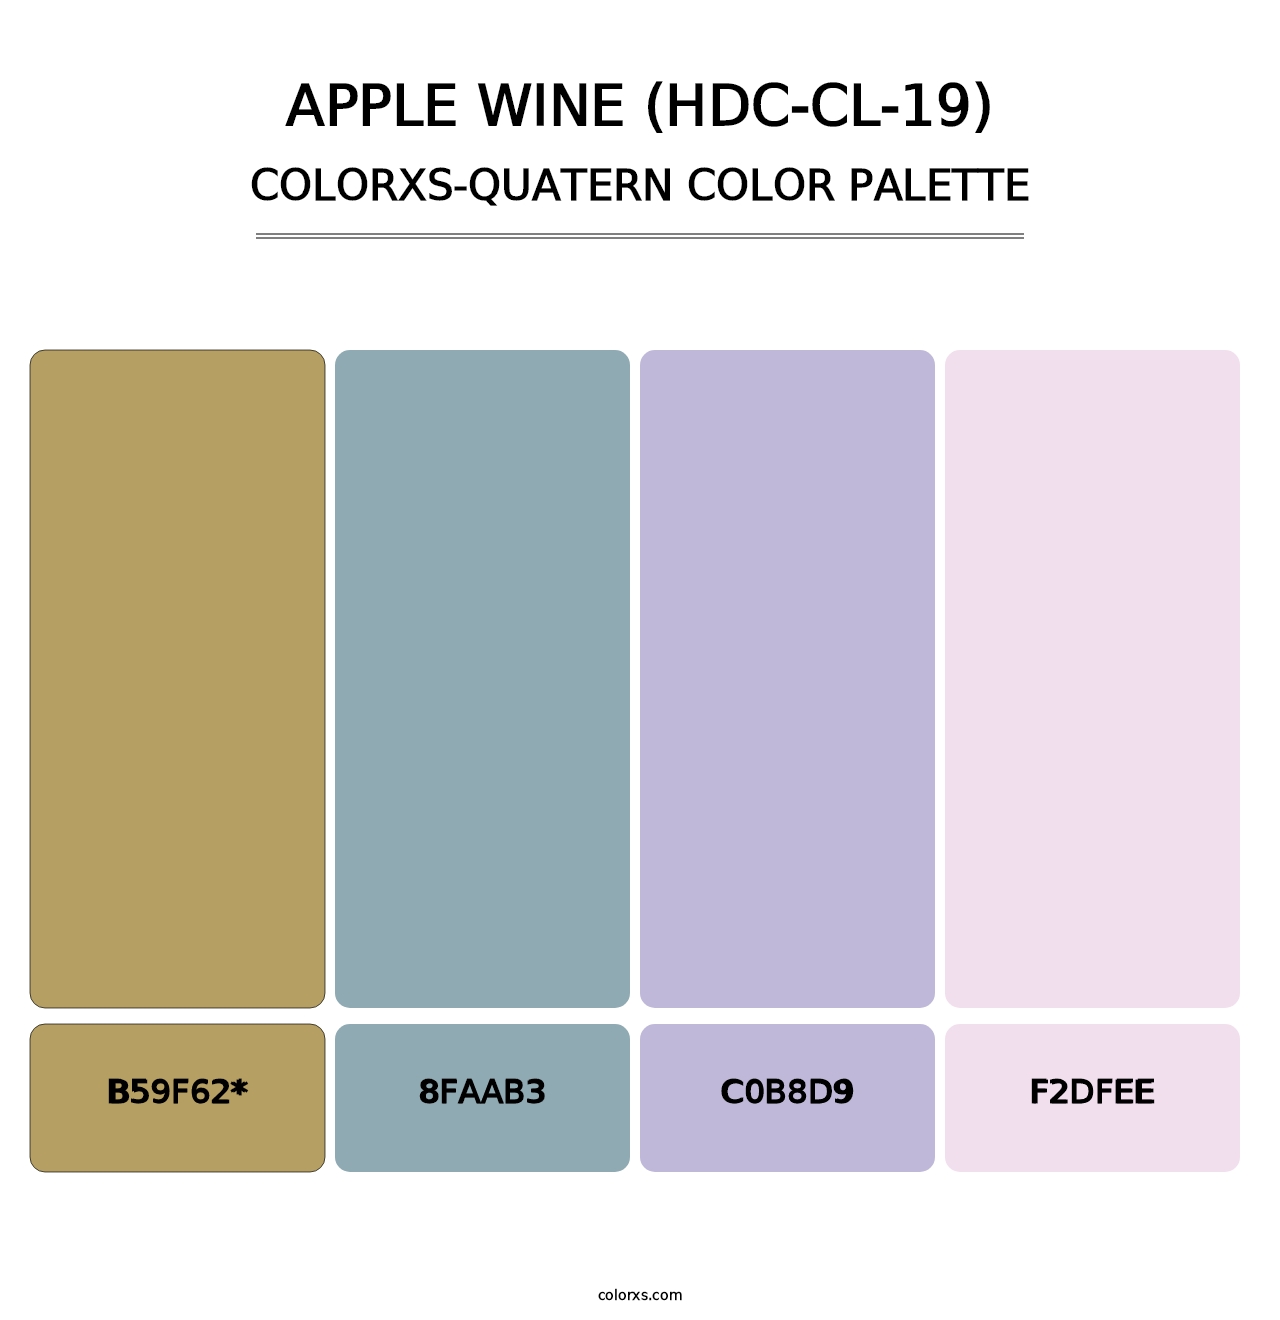 Apple Wine (HDC-CL-19) - Colorxs Quatern Palette